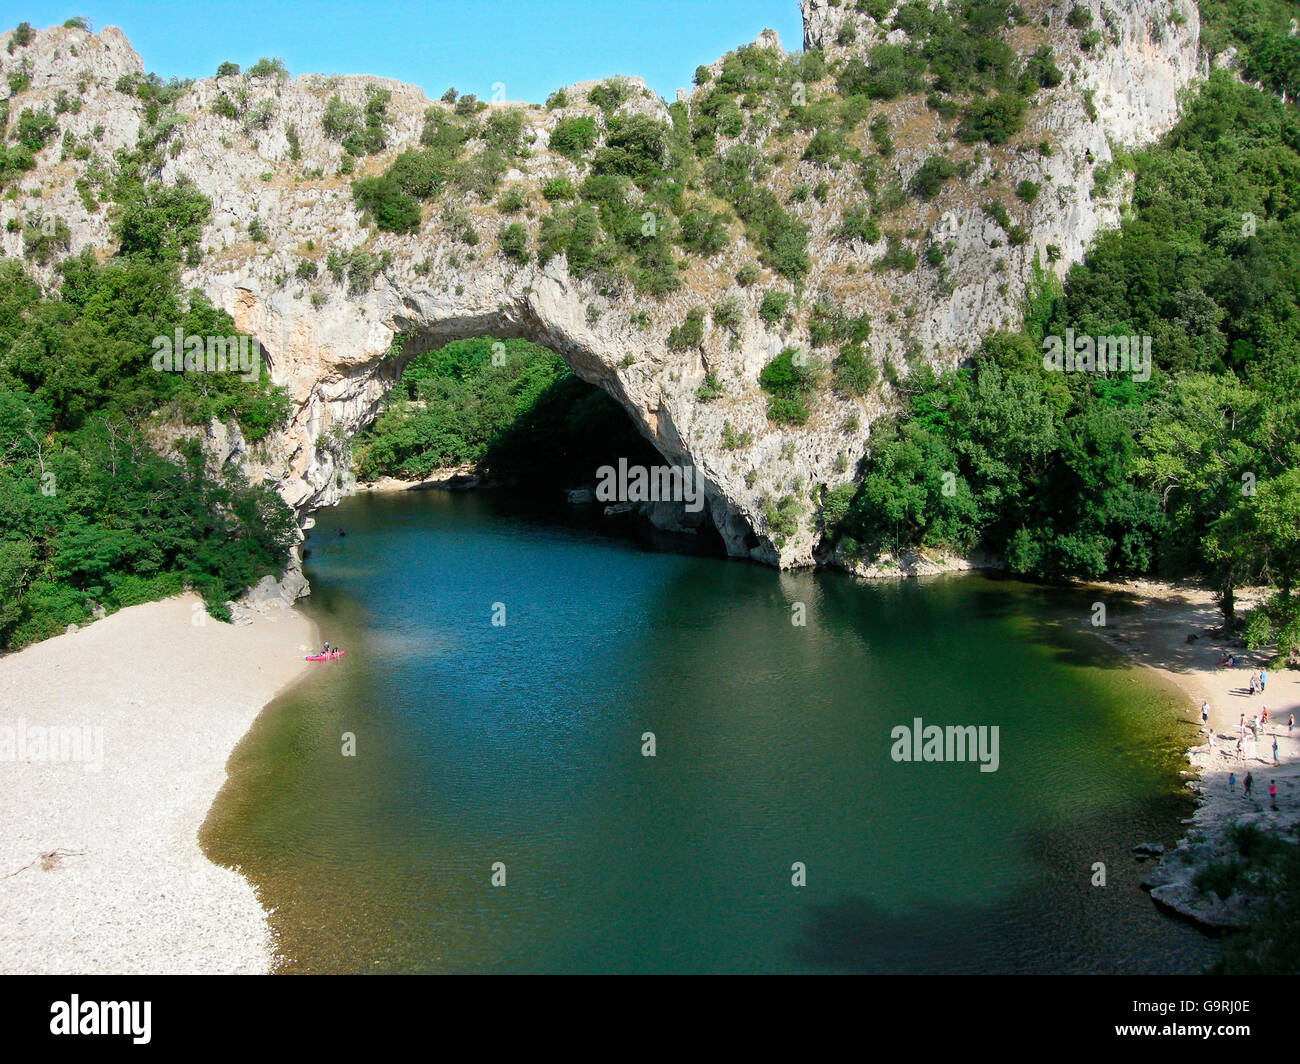 Pont d'Arc, Les Gorges de l'Ardeche, Stone Arche, river Aredeche, Aiguze, Languedoc-Roussillon, France, Europe Stock Photo